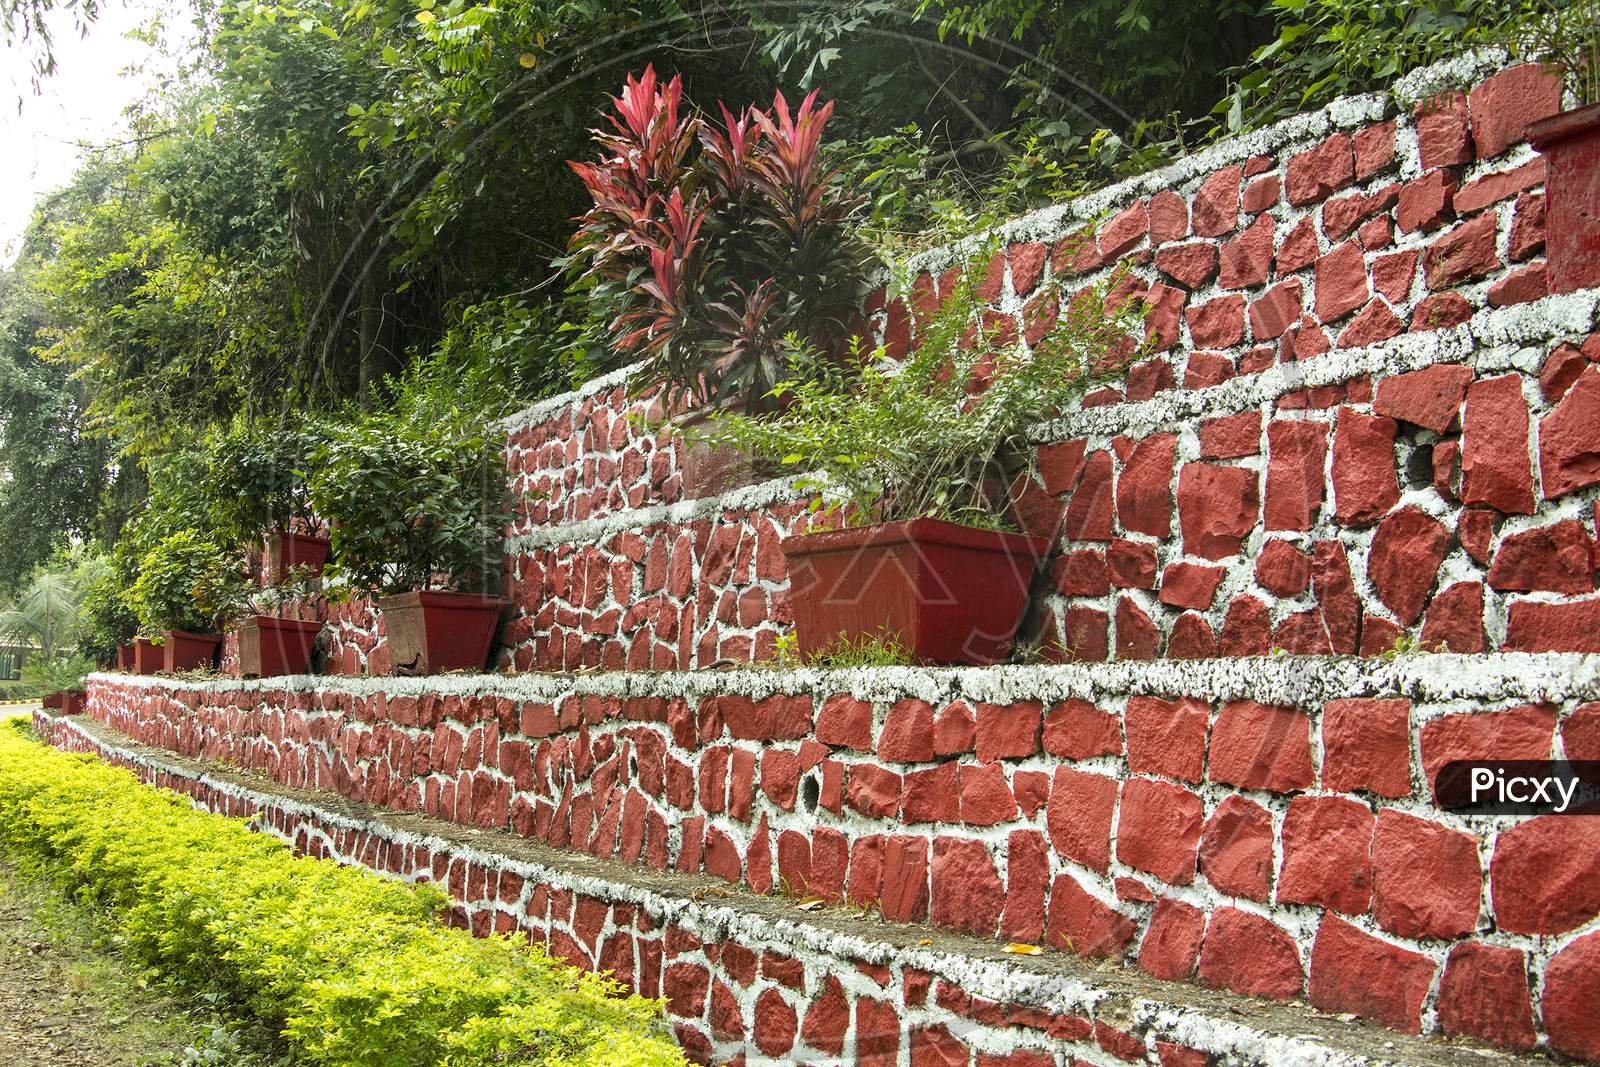 Botanical garden with brickwork